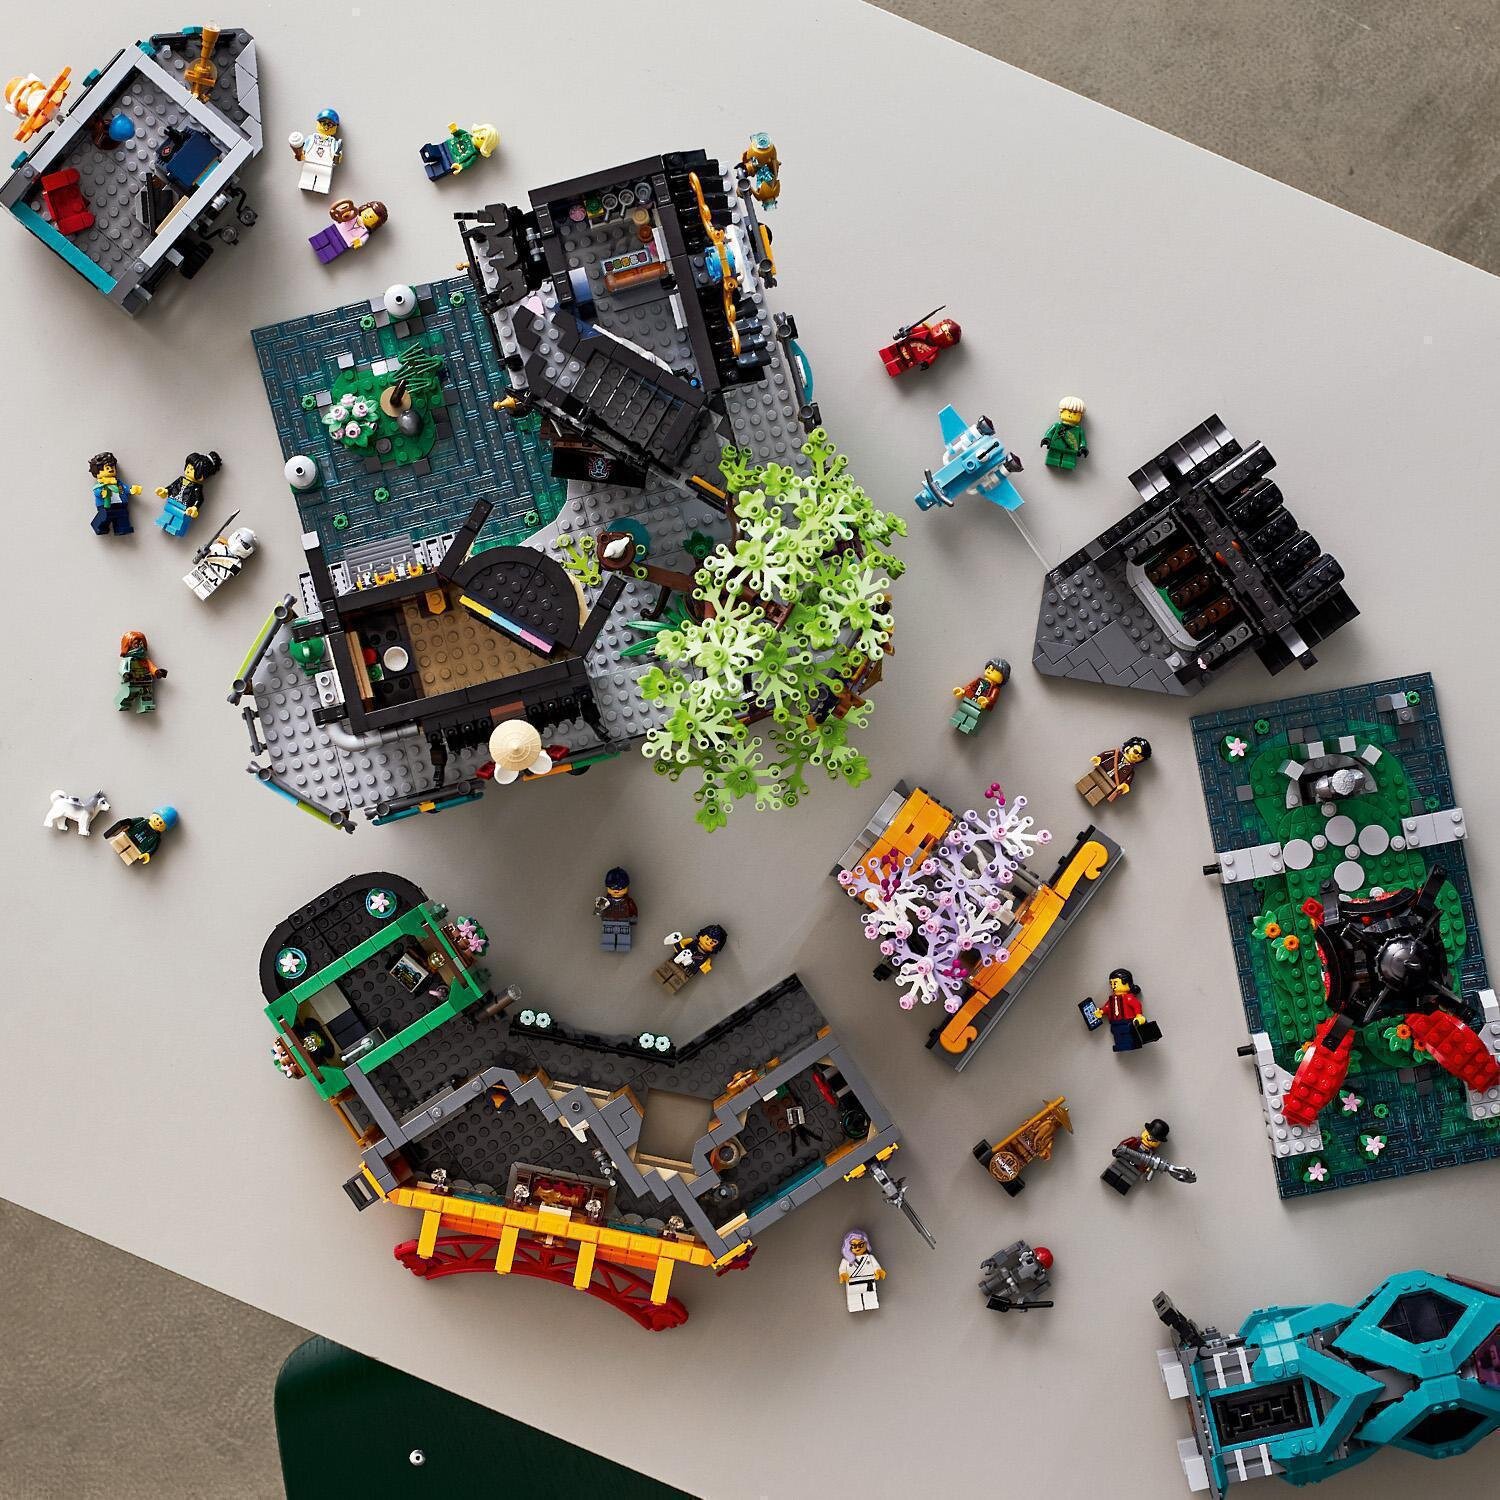 LEGO Ninjago Ogrody miasta 71741 - niskie ceny i opinie w Media Expert